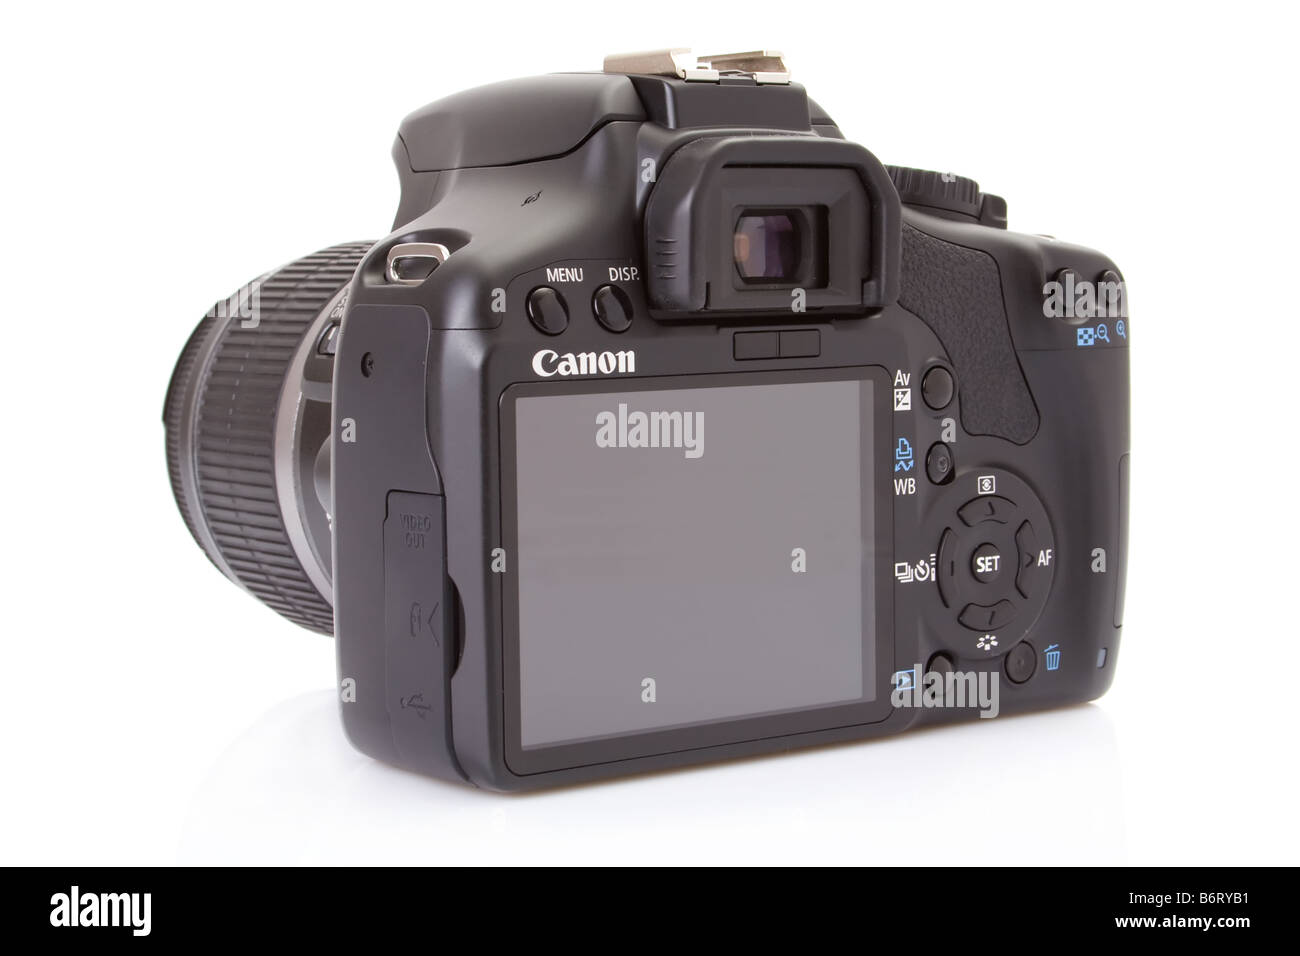 Canon EOS 450D (Rebel XSi), 12 megapixel fotocamera reflex digitale con il  18-55mm kit obiettivo Foto stock - Alamy